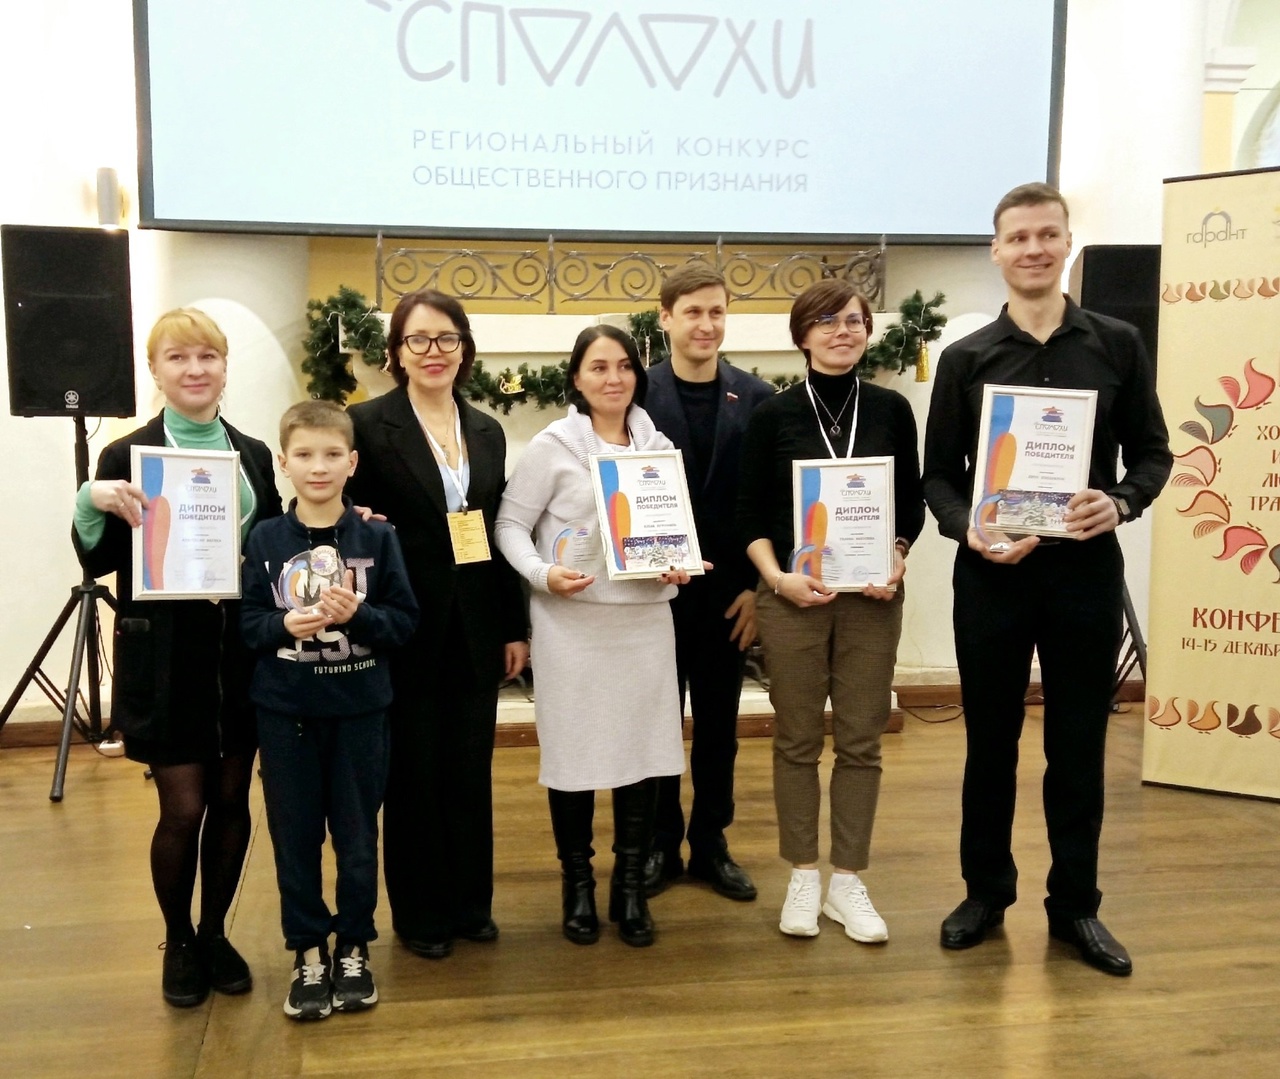 Елена Курочкина из поселка Приводино стала победителем регионального конкурса общественного признания &quot;Сполохи&quot;.